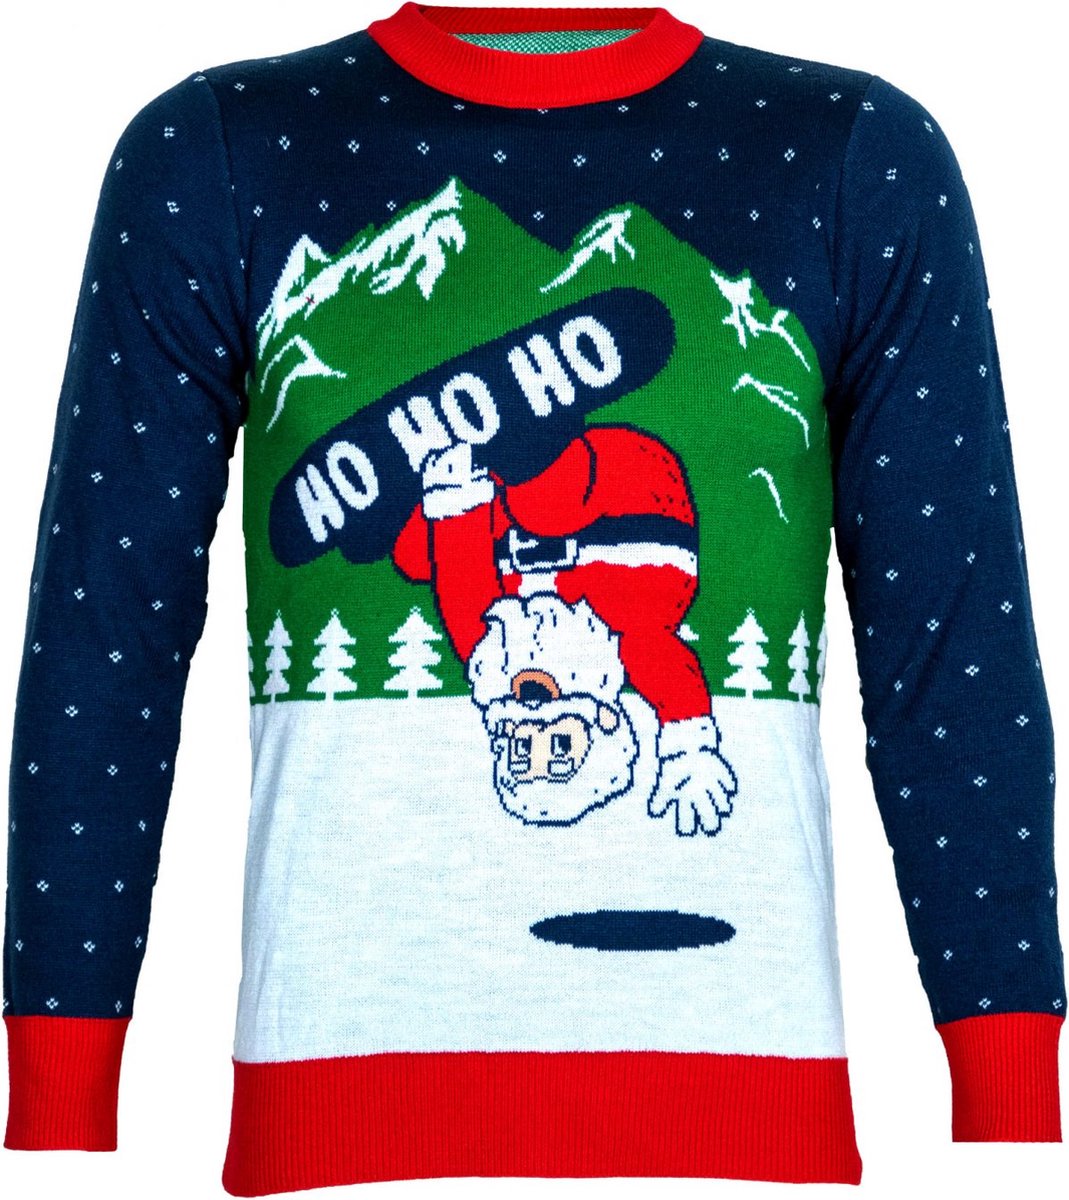 Kerstman op een snowboard - Maat XL - Foute Kersttrui - DrunkenDinos - Gebreide kersttrui - Foute trui - Feestkleding - Kerstkleding - Foute kleding - Kerst trui - Kersttrui dames - Kersttrui heren - Lelijke Kersttrui - Grappige Kersttrui -